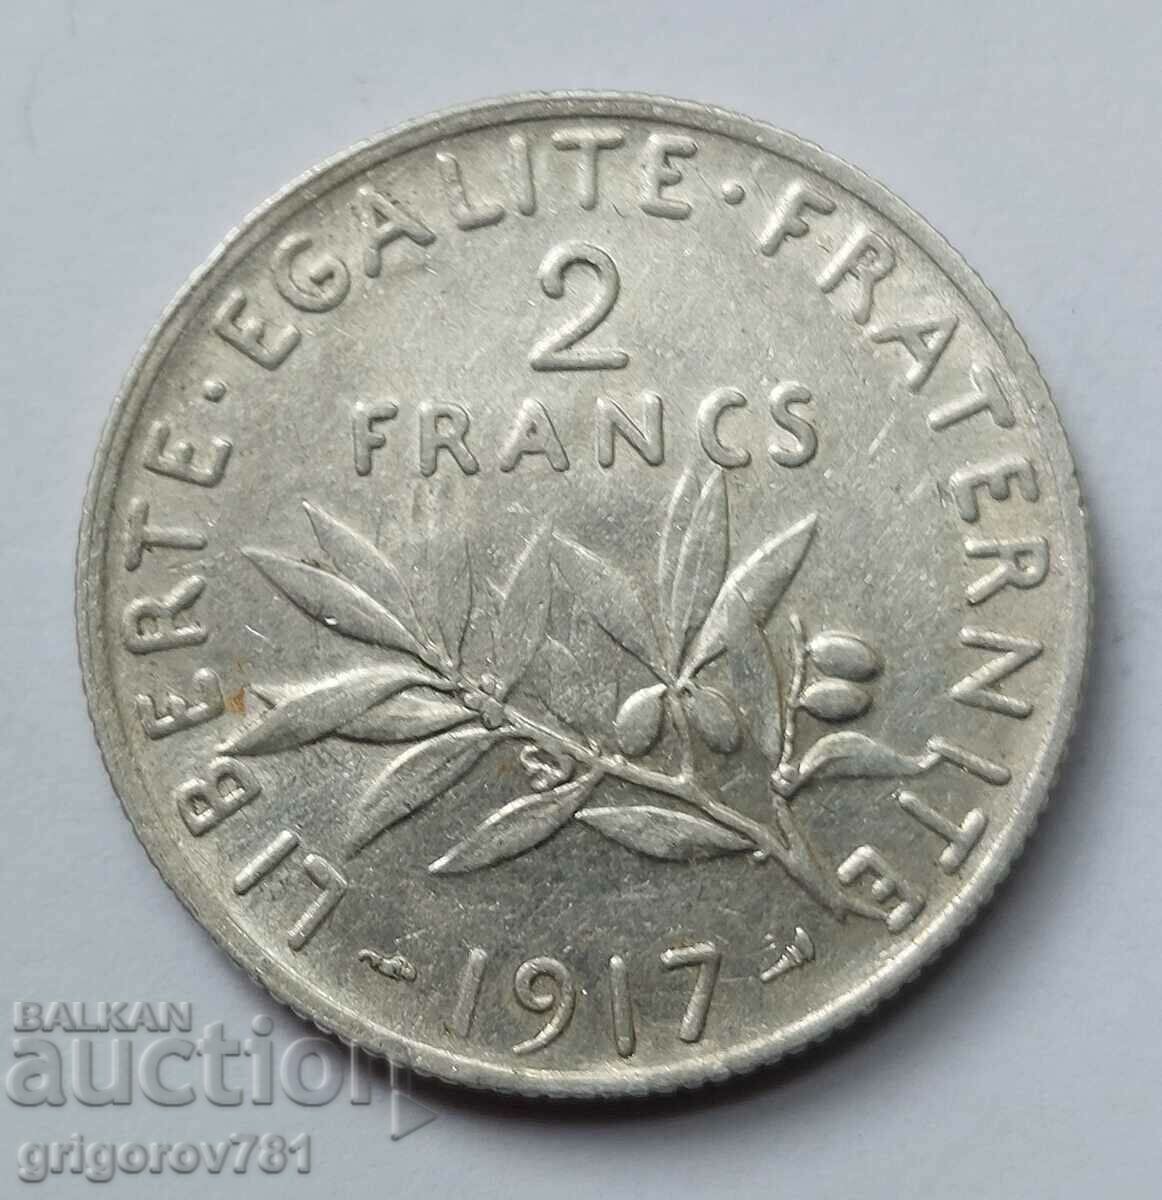 2 Φράγκα Ασήμι Γαλλία 1917 - Ασημένιο νόμισμα #95